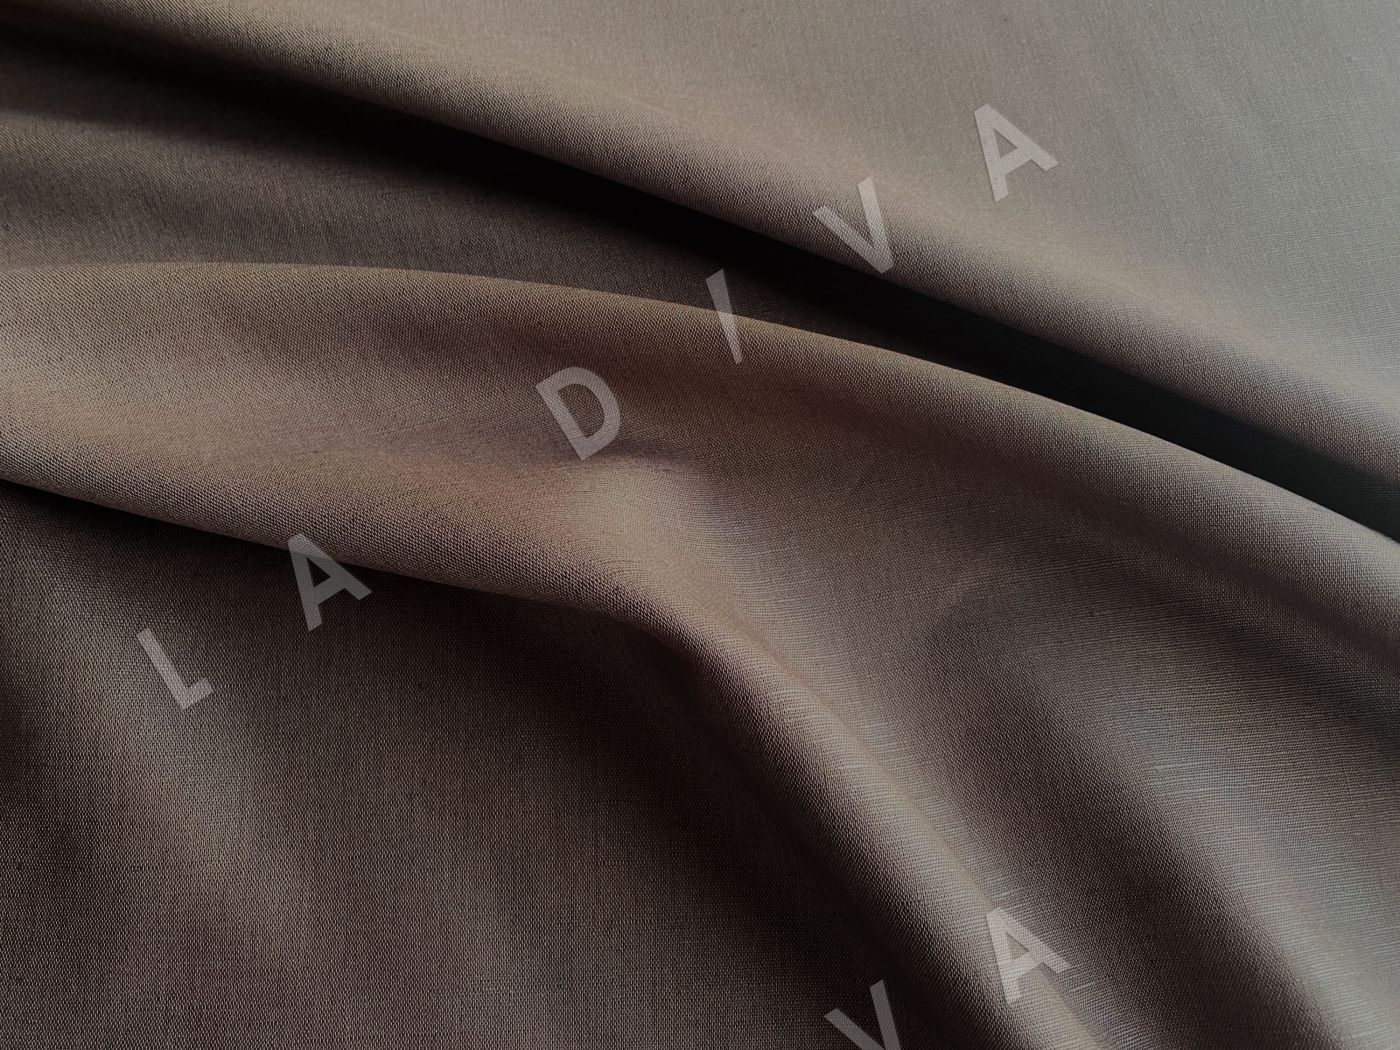 Купить ткань Костюмный лен с хлопком коричневого цвета с розоватым подтономв Москве D-045 – LA DIVA